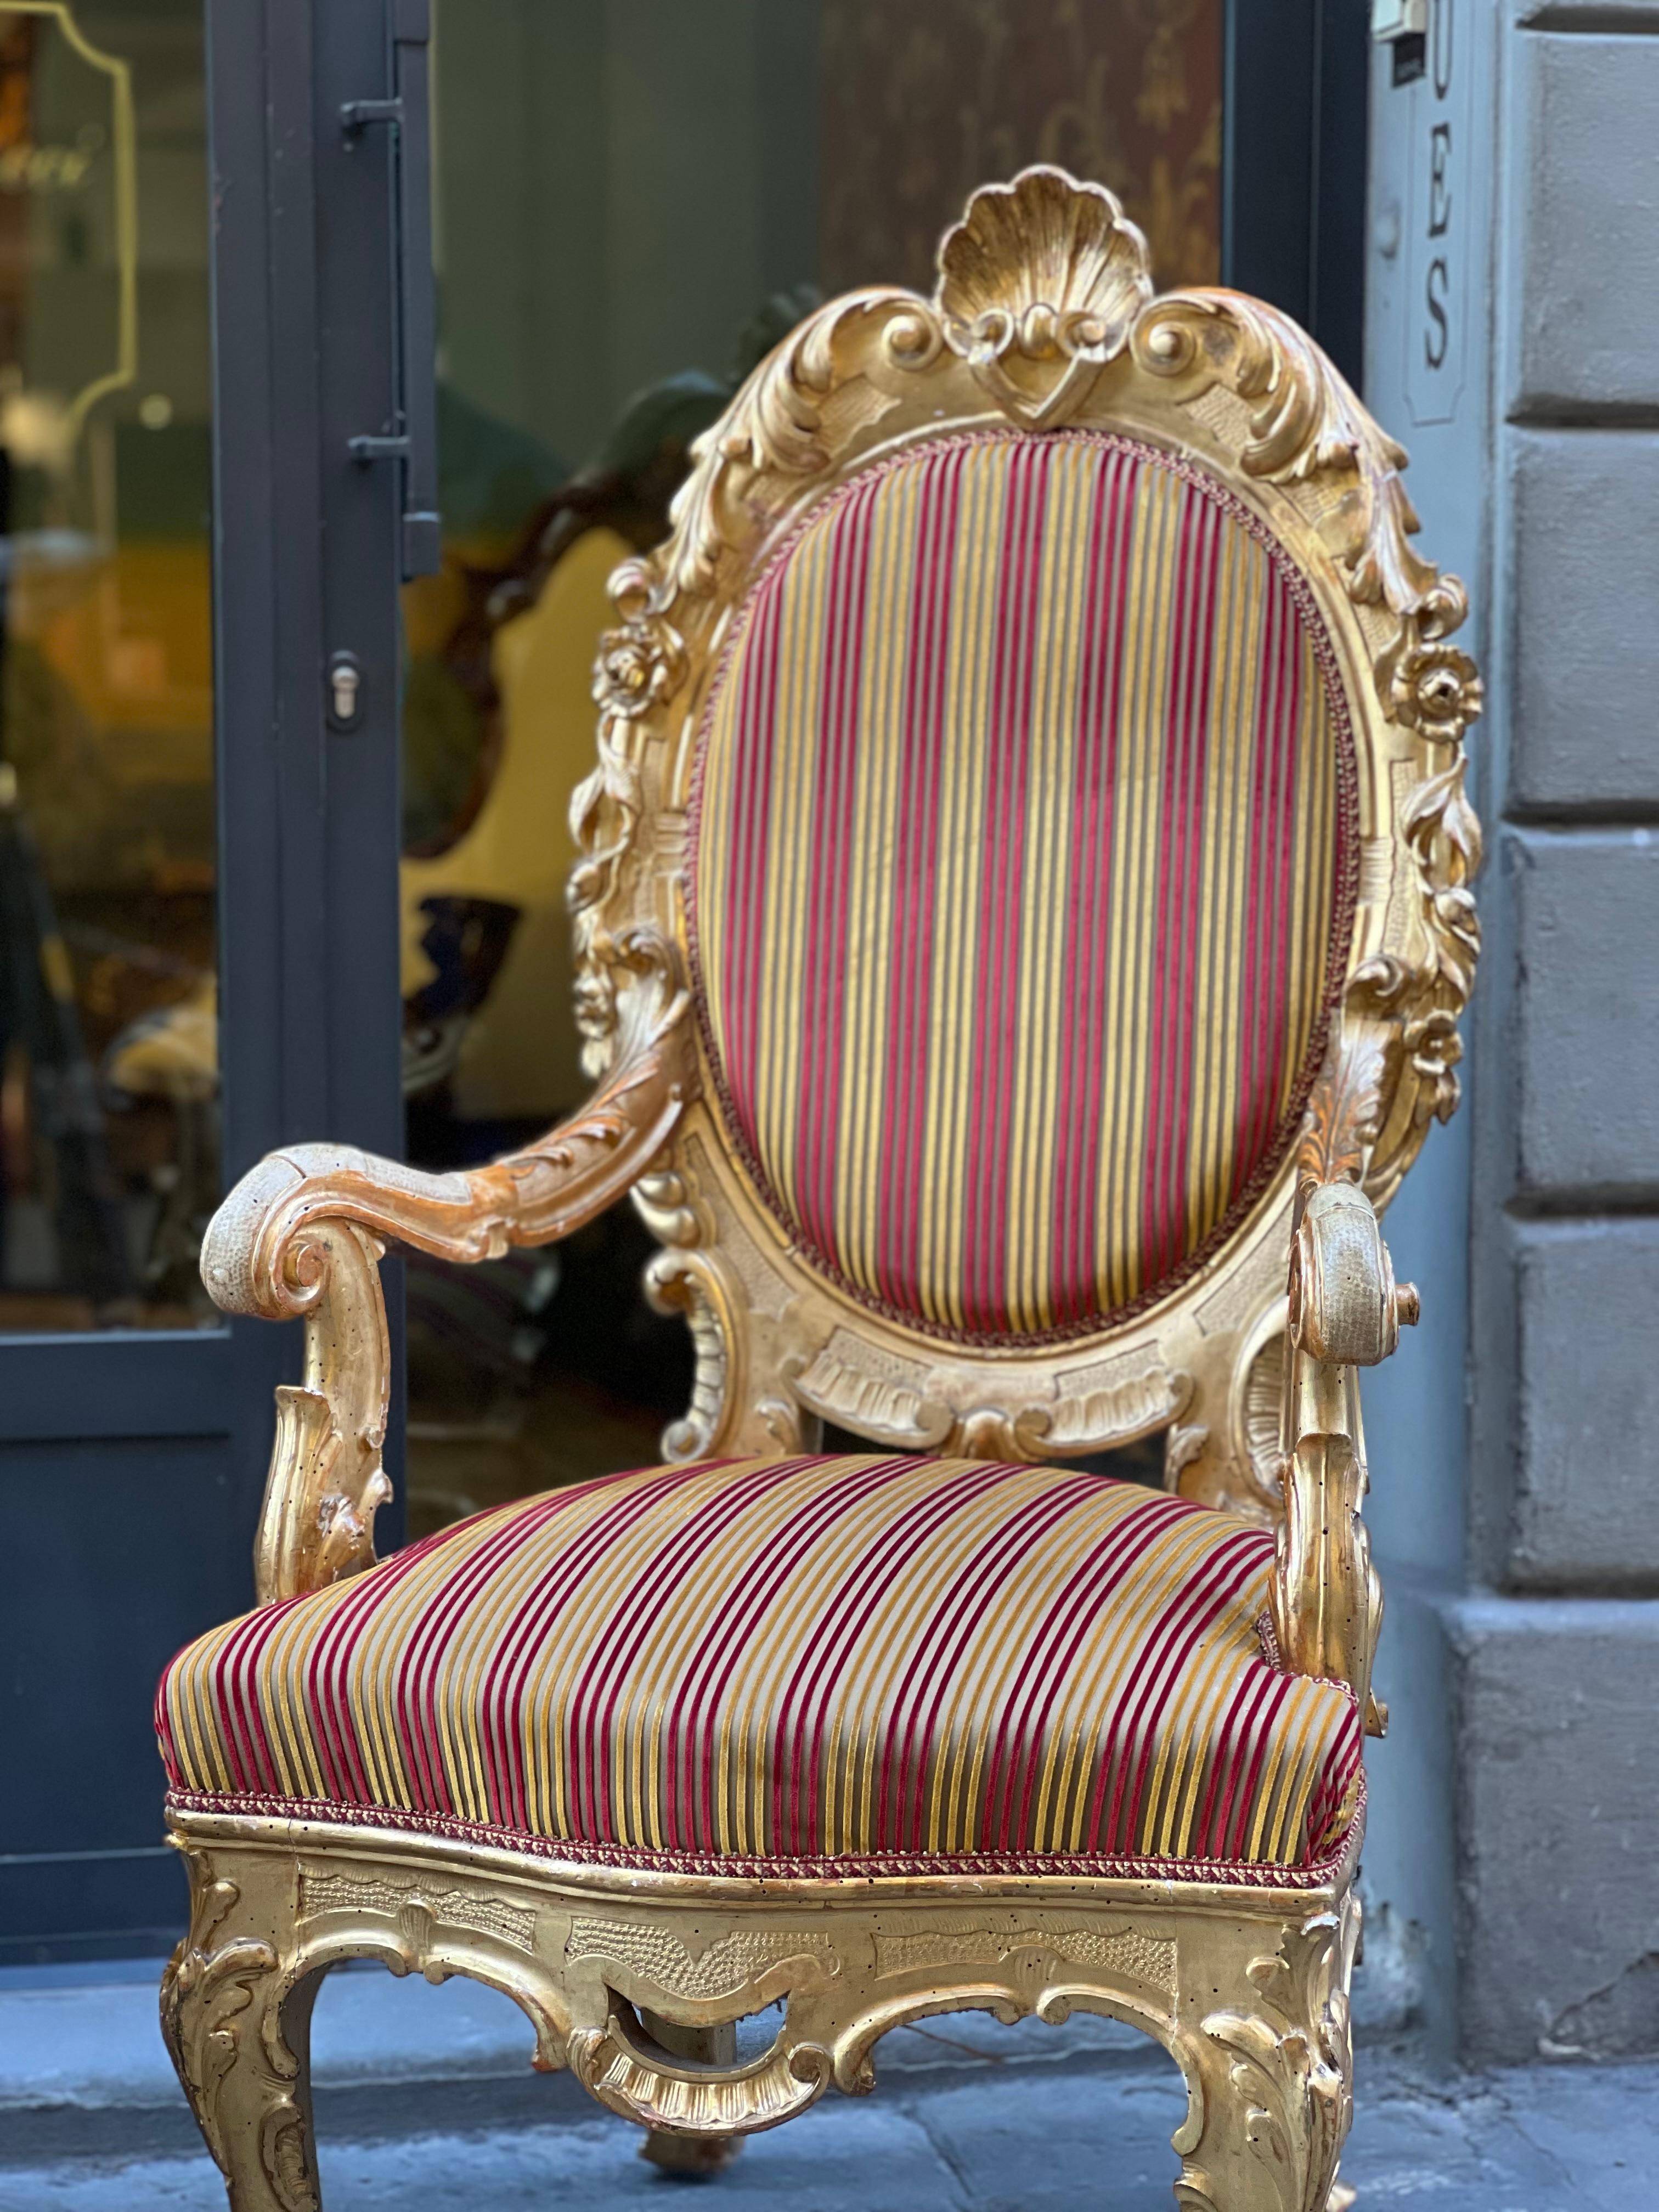 Bedeutendes Paar geschnitzter und vergoldeter Holzsessel, Rom, 19. Jahrhundert.

Die Qualität der Schnitzerei, die Vergoldung und vor allem bestimmte stilistische Merkmale lassen vermuten, dass dieses Sesselpaar für eine kirchliche Einrichtung